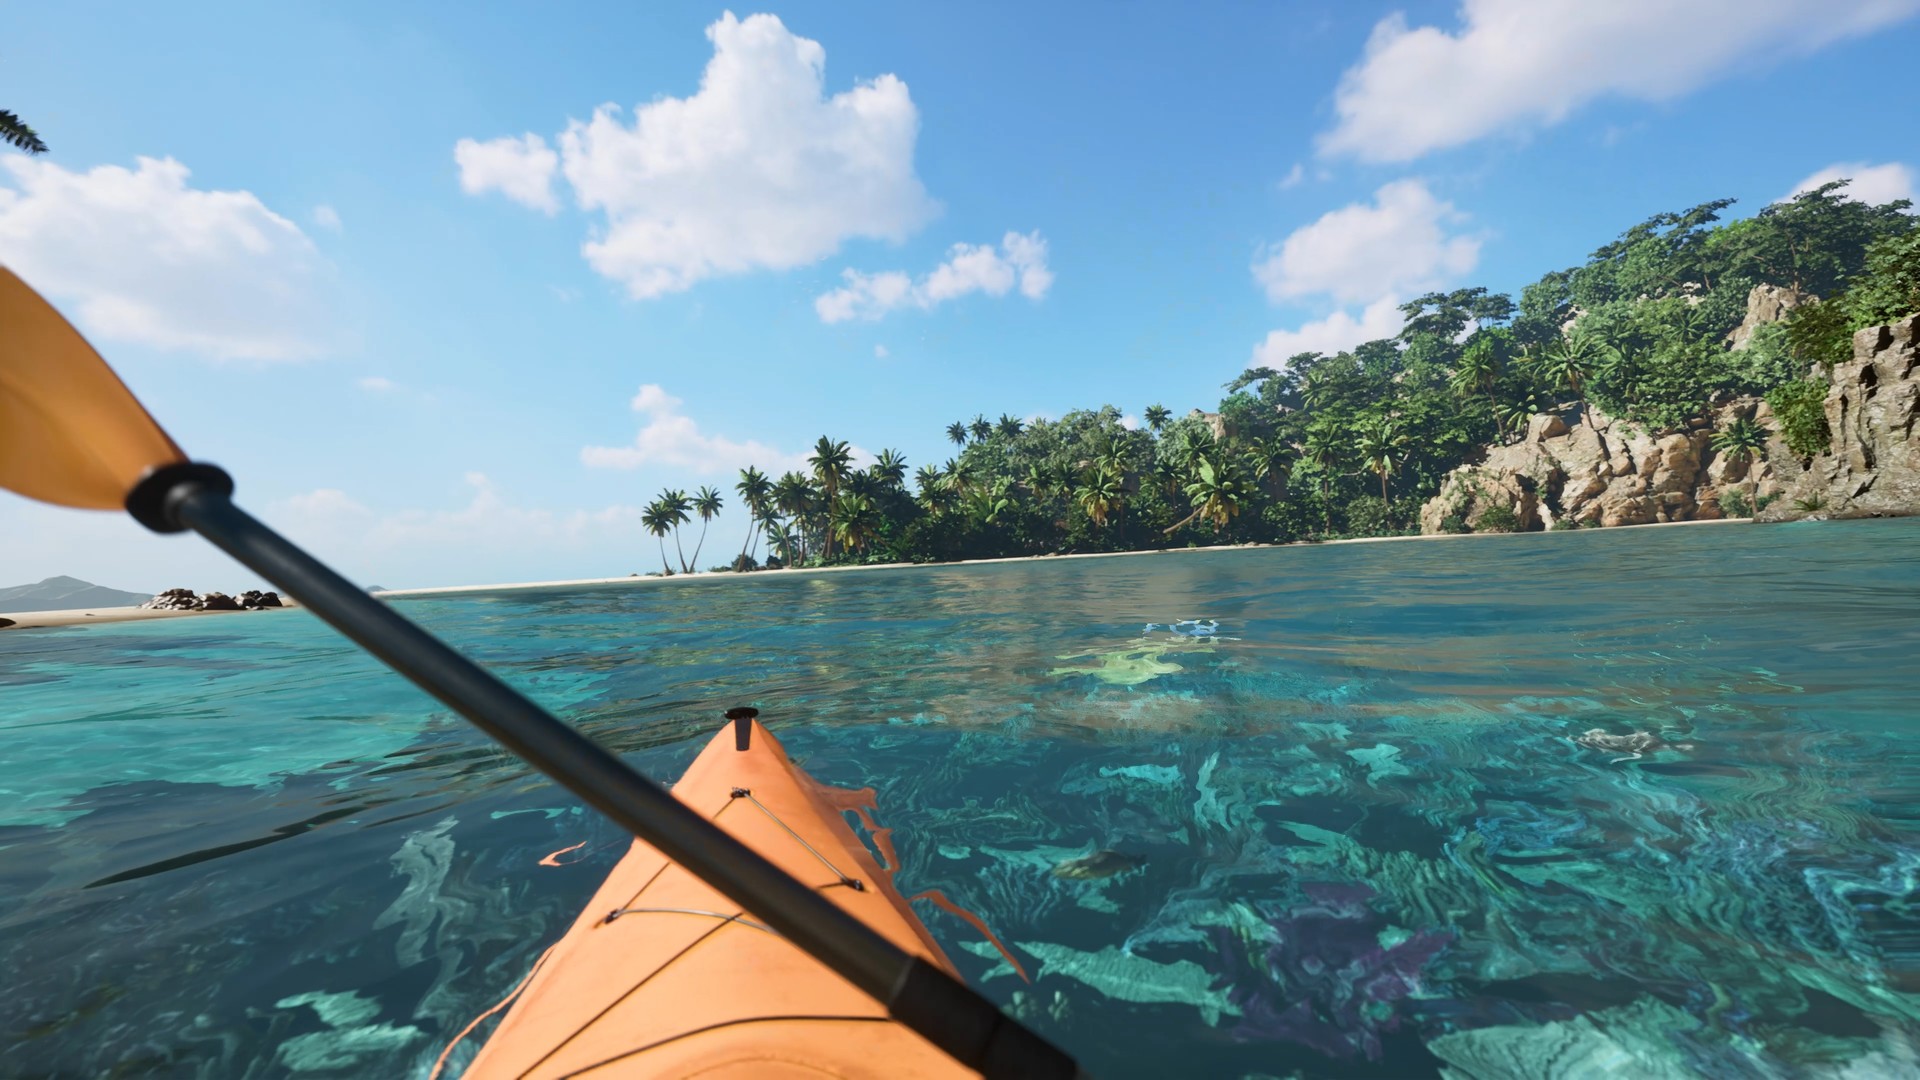 Kayak VR: Mirage Steam Altergift, 18.76 usd